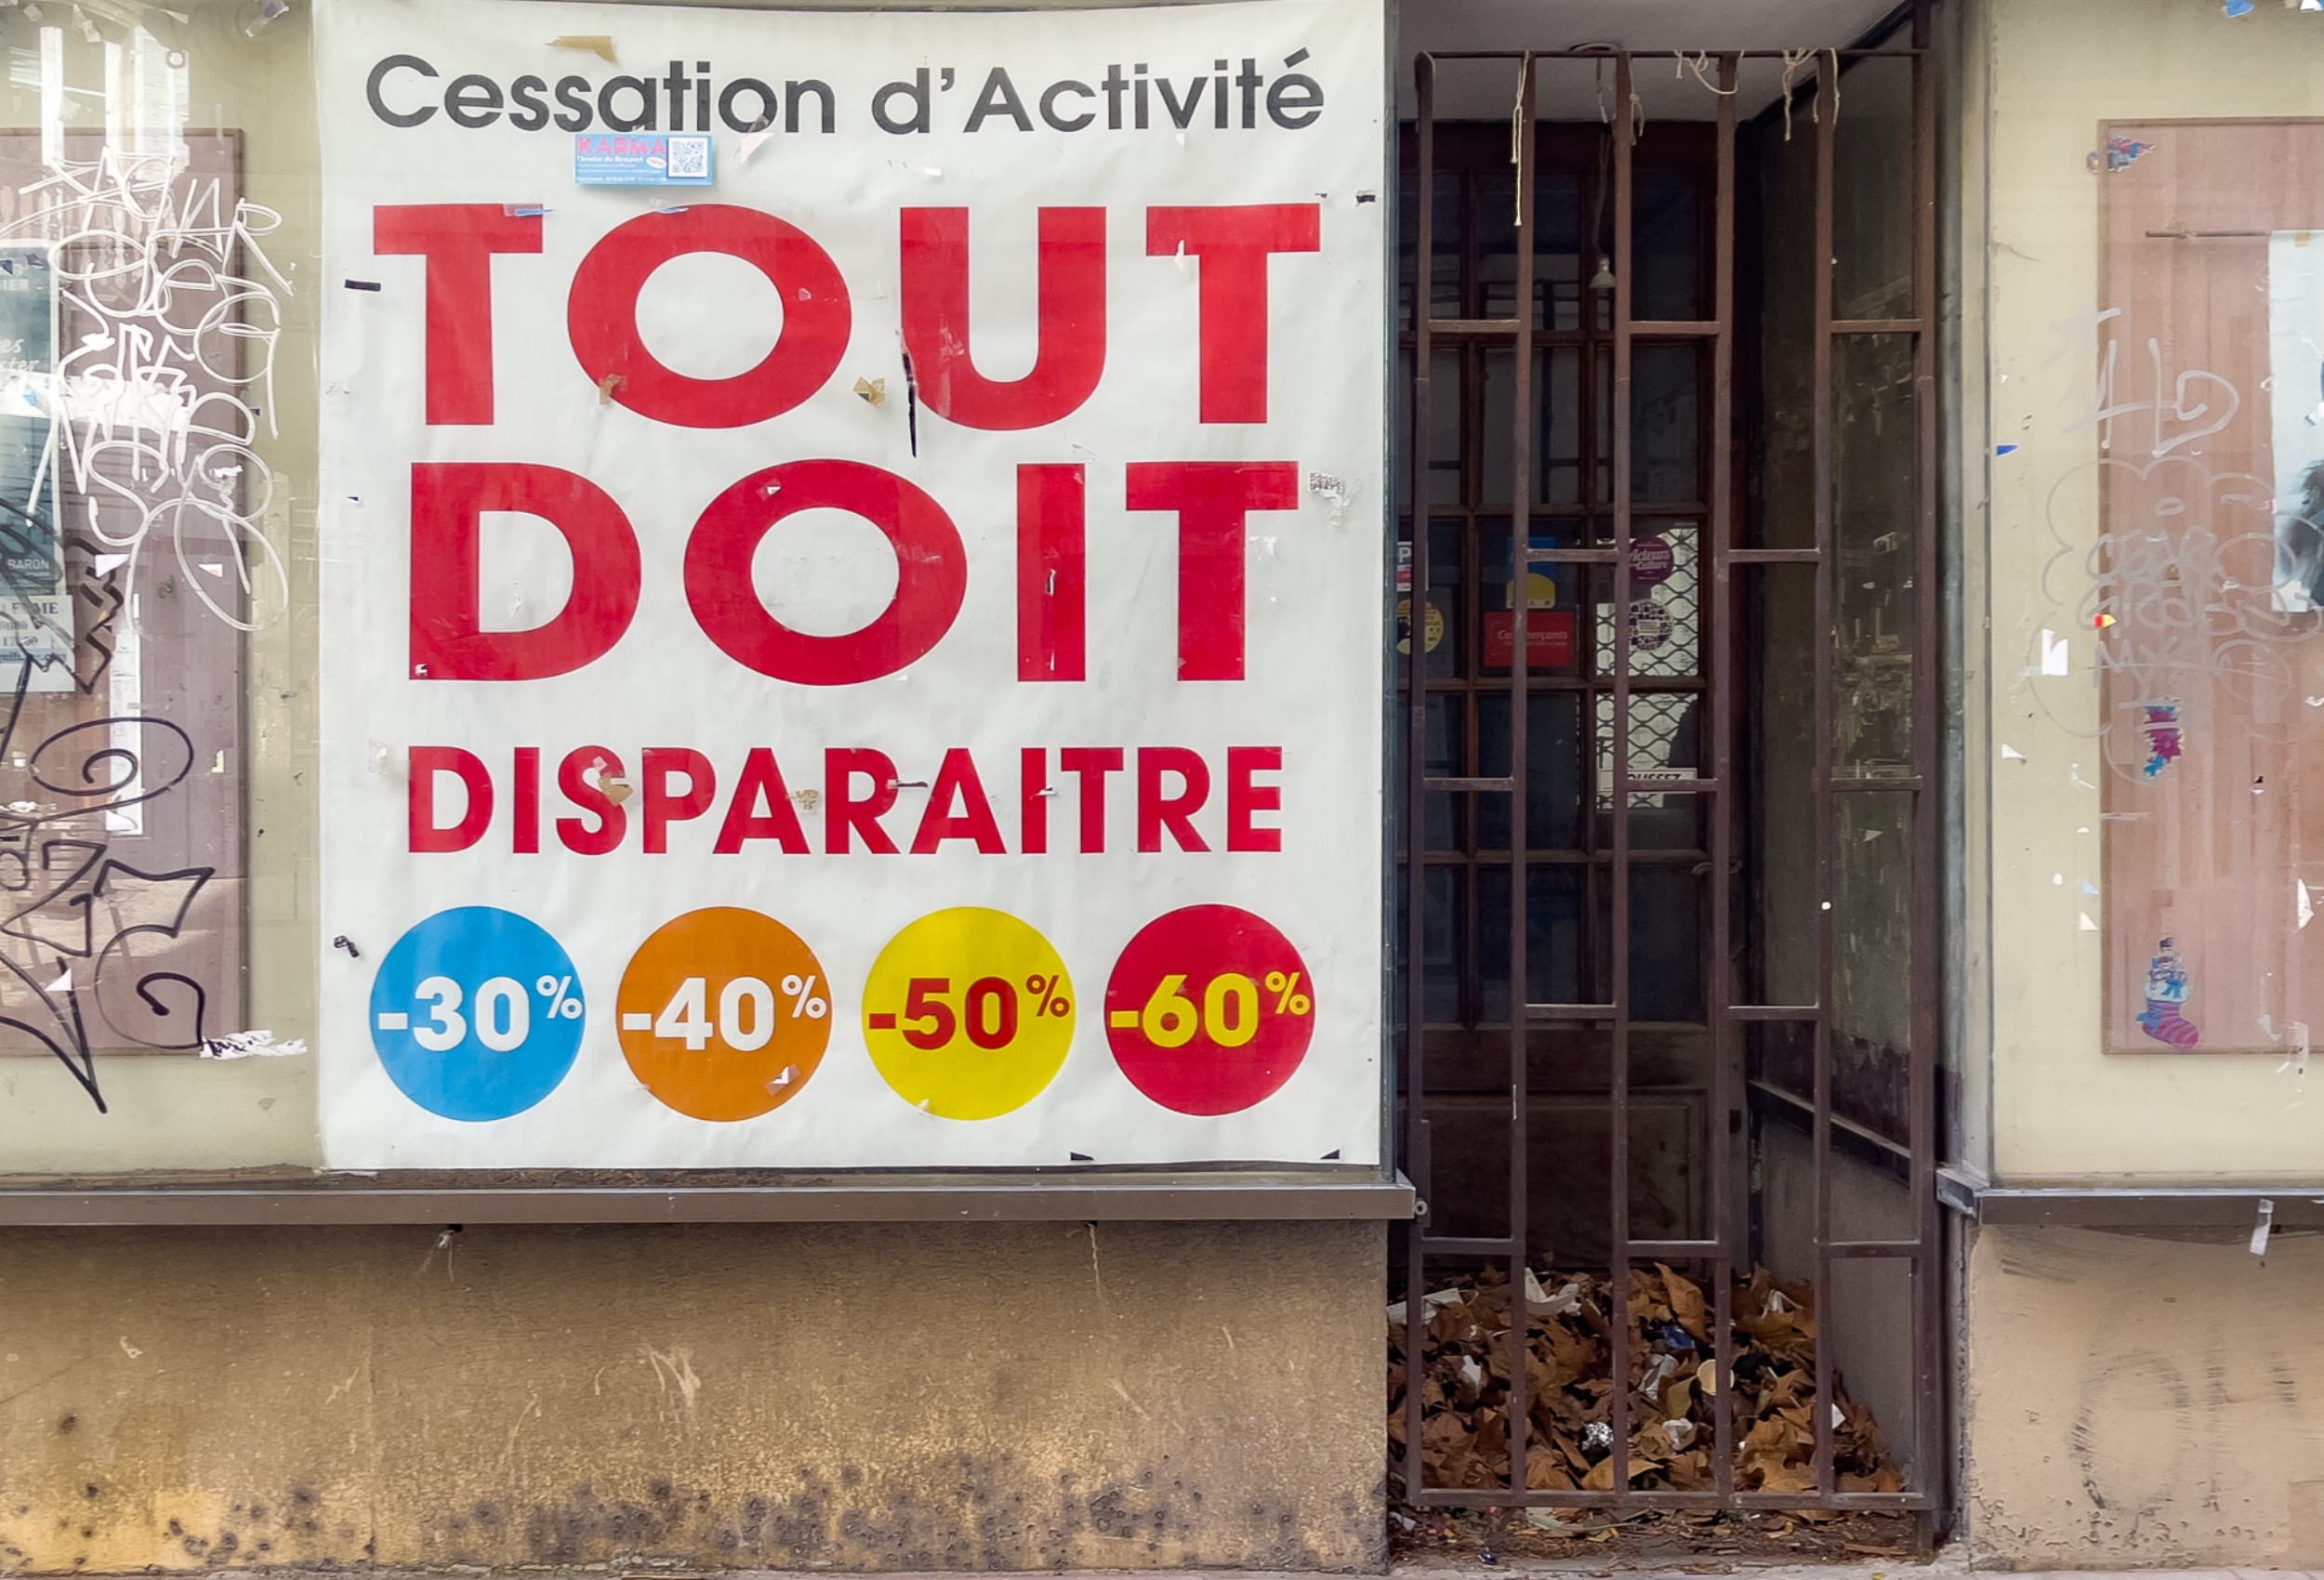 Entreprises : les cessations d'activité volontaires explosent en France (+100% en deux ans)